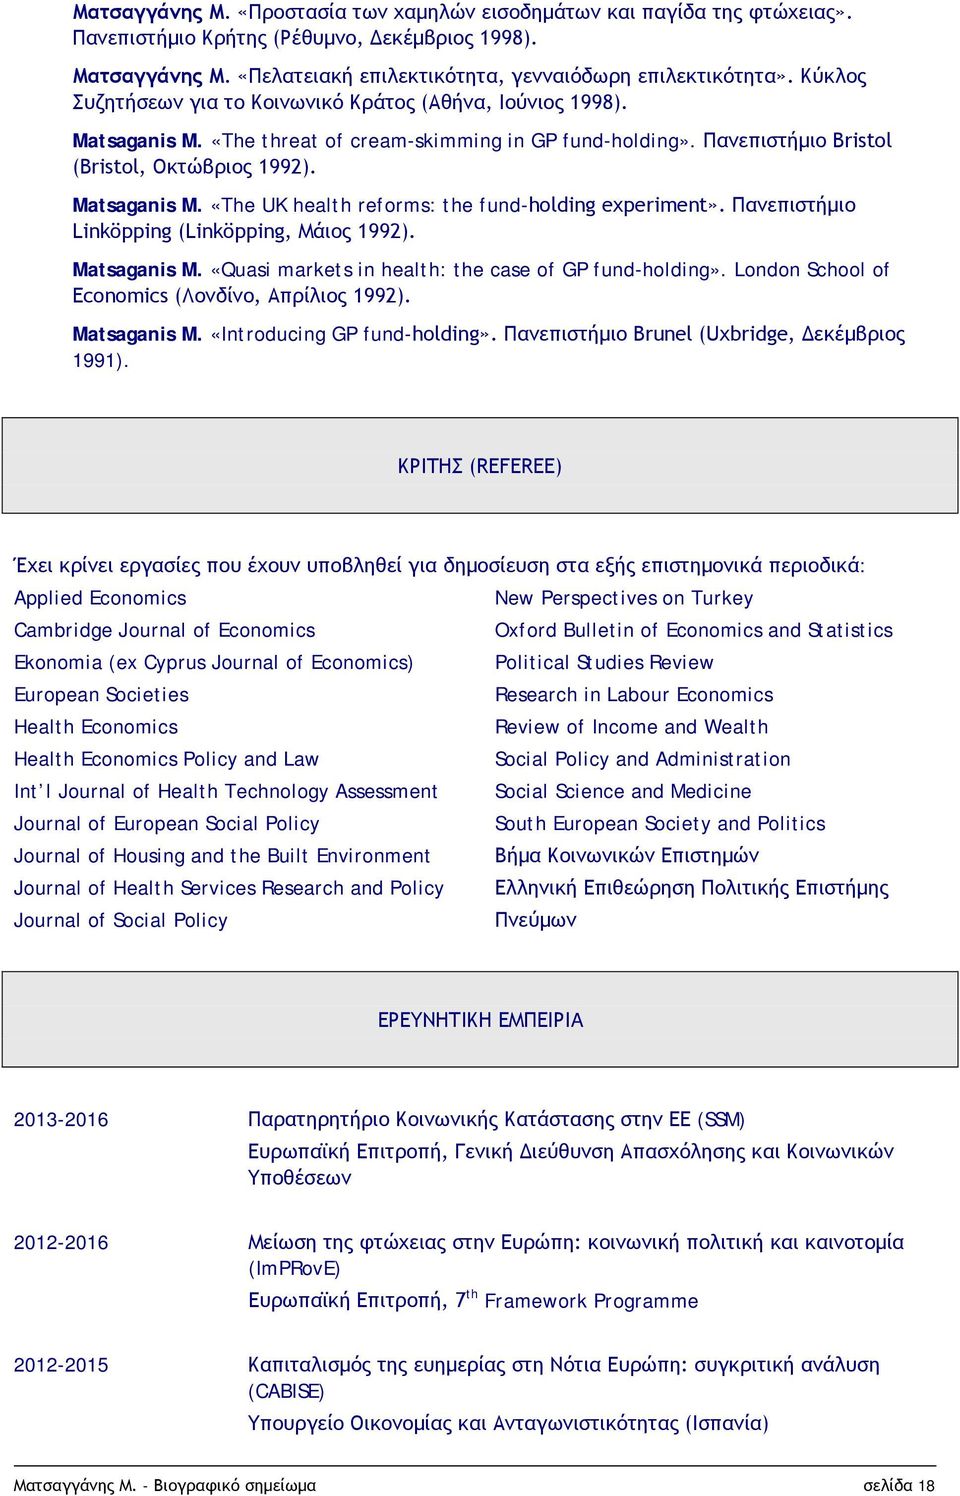 Πανεπιστήμιο Linköpping (Linköpping, Μάιος 1992). Matsaganis M. «Quasi markets in health: the case of GP fund-holding». London School of Economics (Λονδίνο, Απρίλιος 1992). Matsaganis M. «Introducing GP fund-holding».